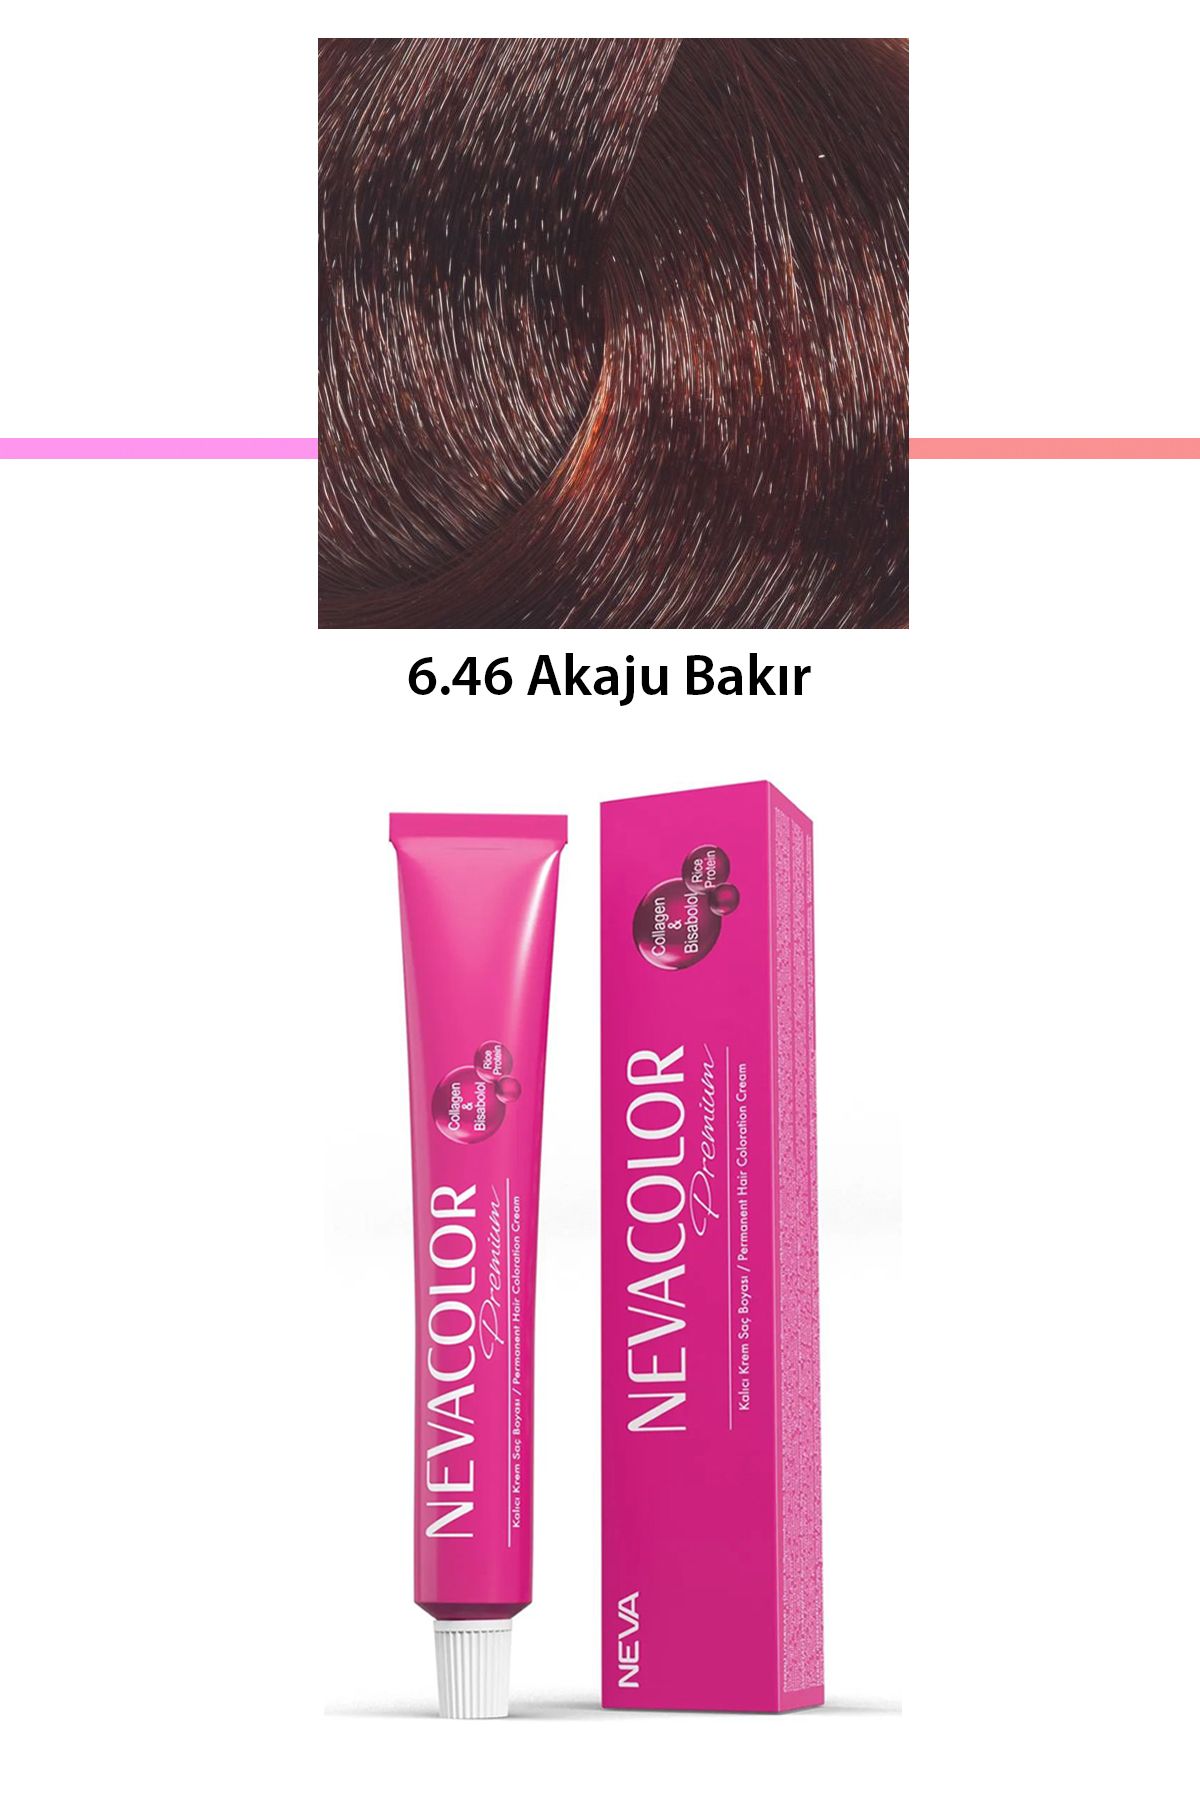 Neva Color Premium 6.46 Akaju Bakır - Kalıcı Krem Saç Boyası 50 g Tüp